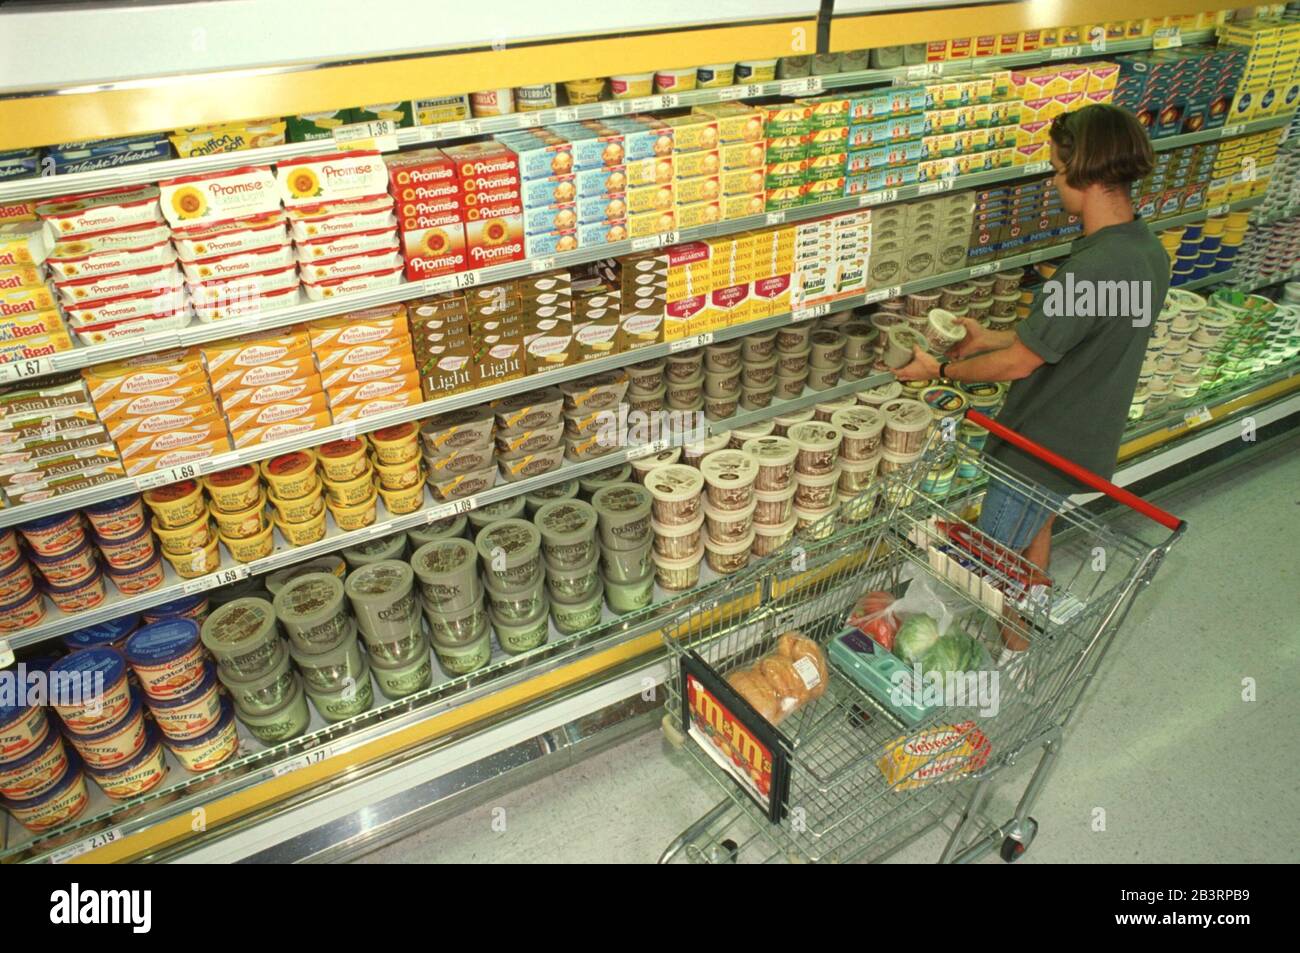 Austin Texas USA, um 1990: Frau mit Einkaufswagen sieht sich Produkte auf dem Milchgang des Supermarkts an. Stockfoto